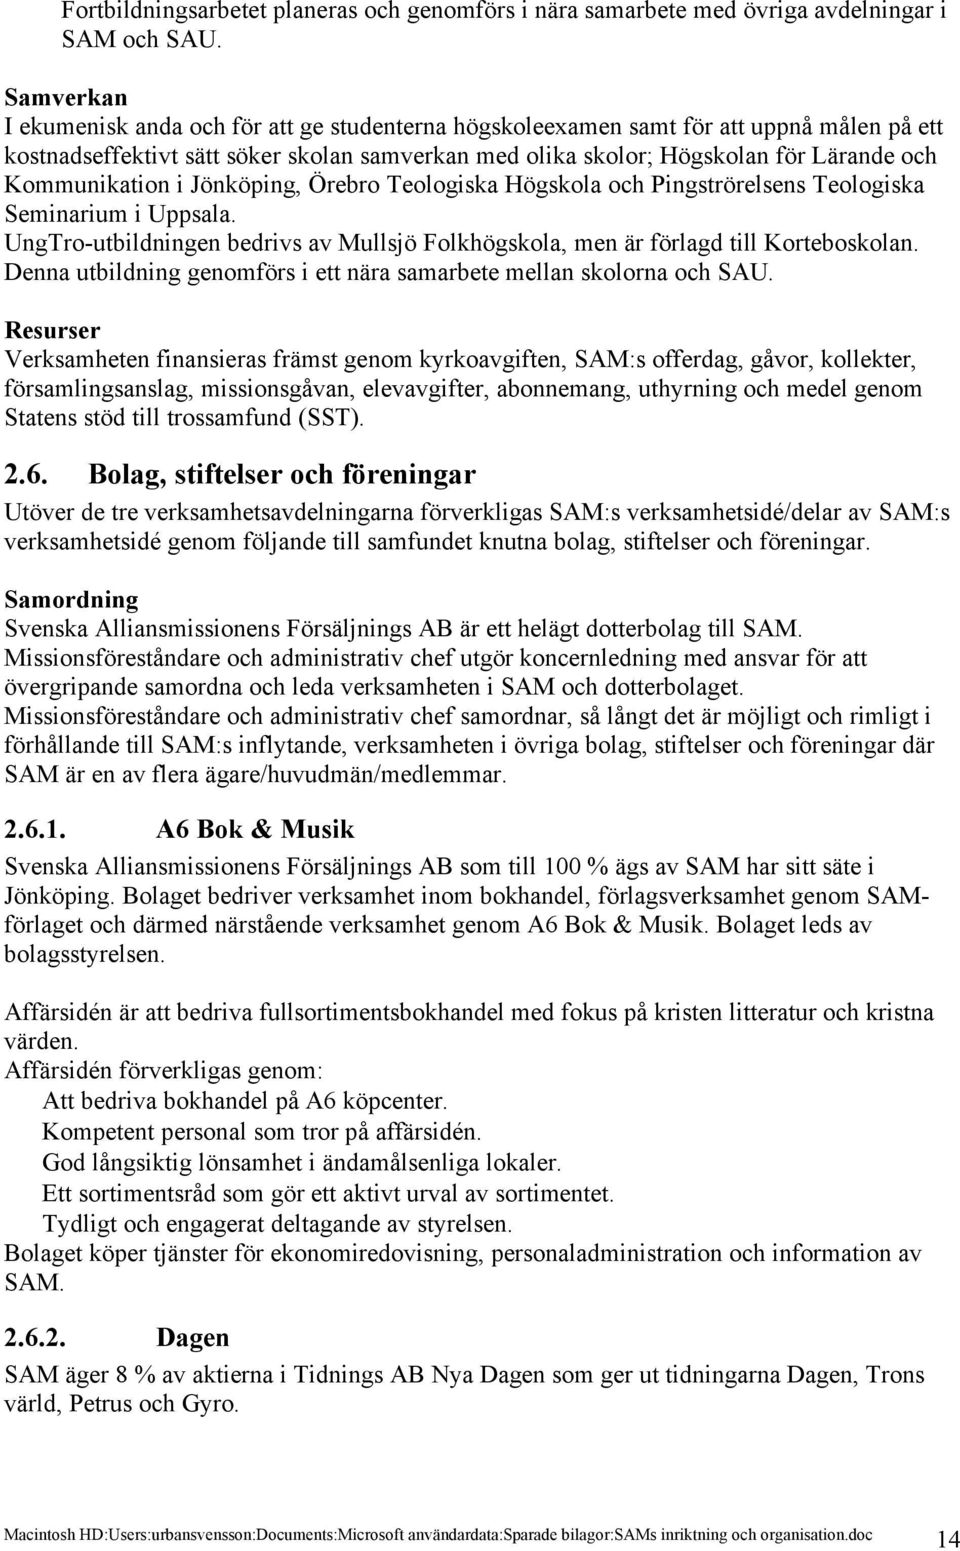 Kommunikation i Jönköping, Örebro Teologiska Högskola och Pingströrelsens Teologiska Seminarium i Uppsala. UngTro-utbildningen bedrivs av Mullsjö Folkhögskola, men är förlagd till Korteboskolan.